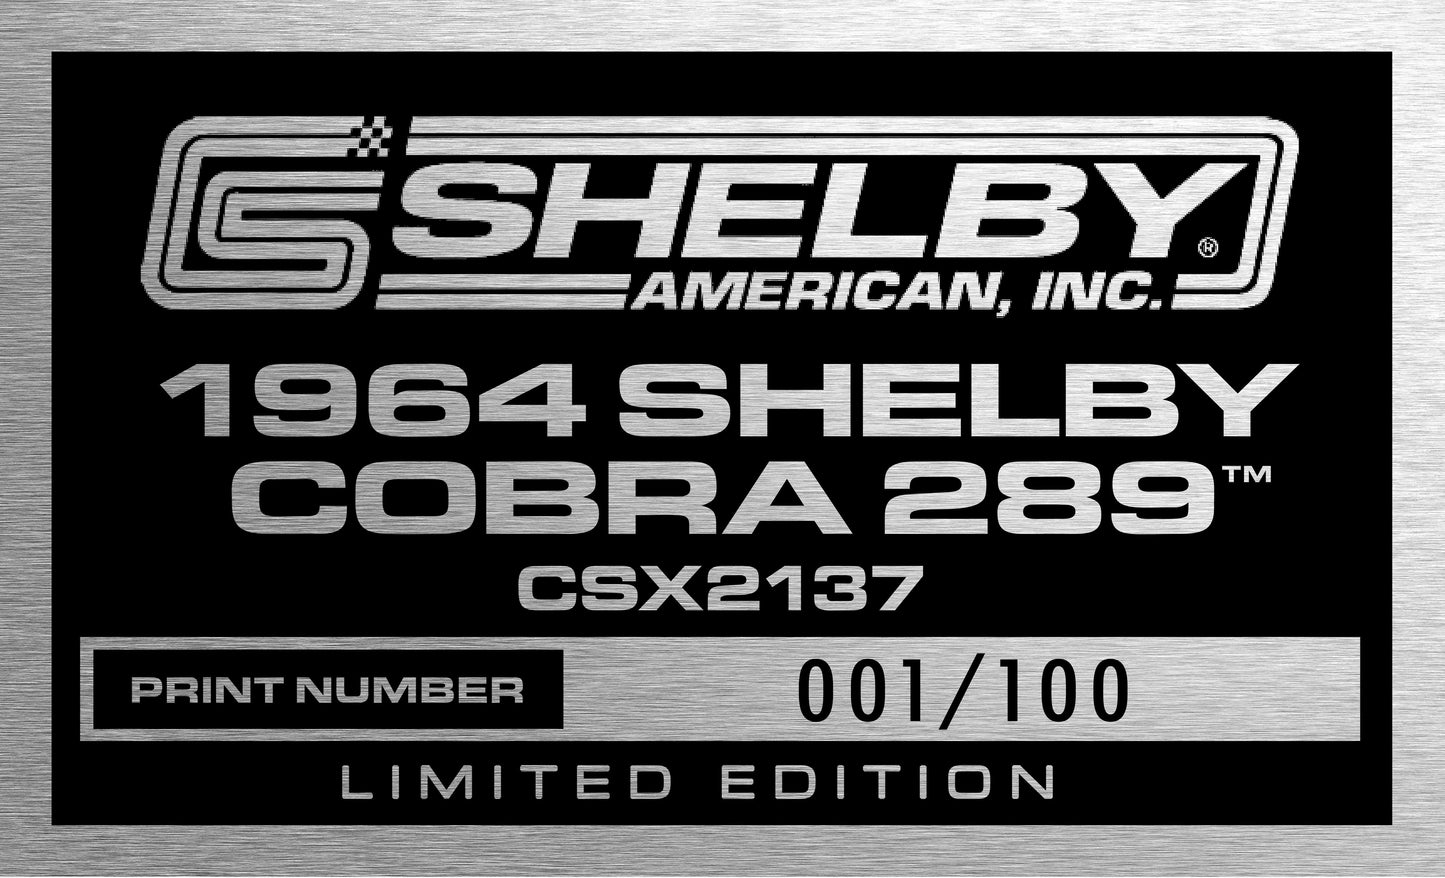 1964 Shelby Cobra 289-CSX2137 Collector's Edition (CSX2137)